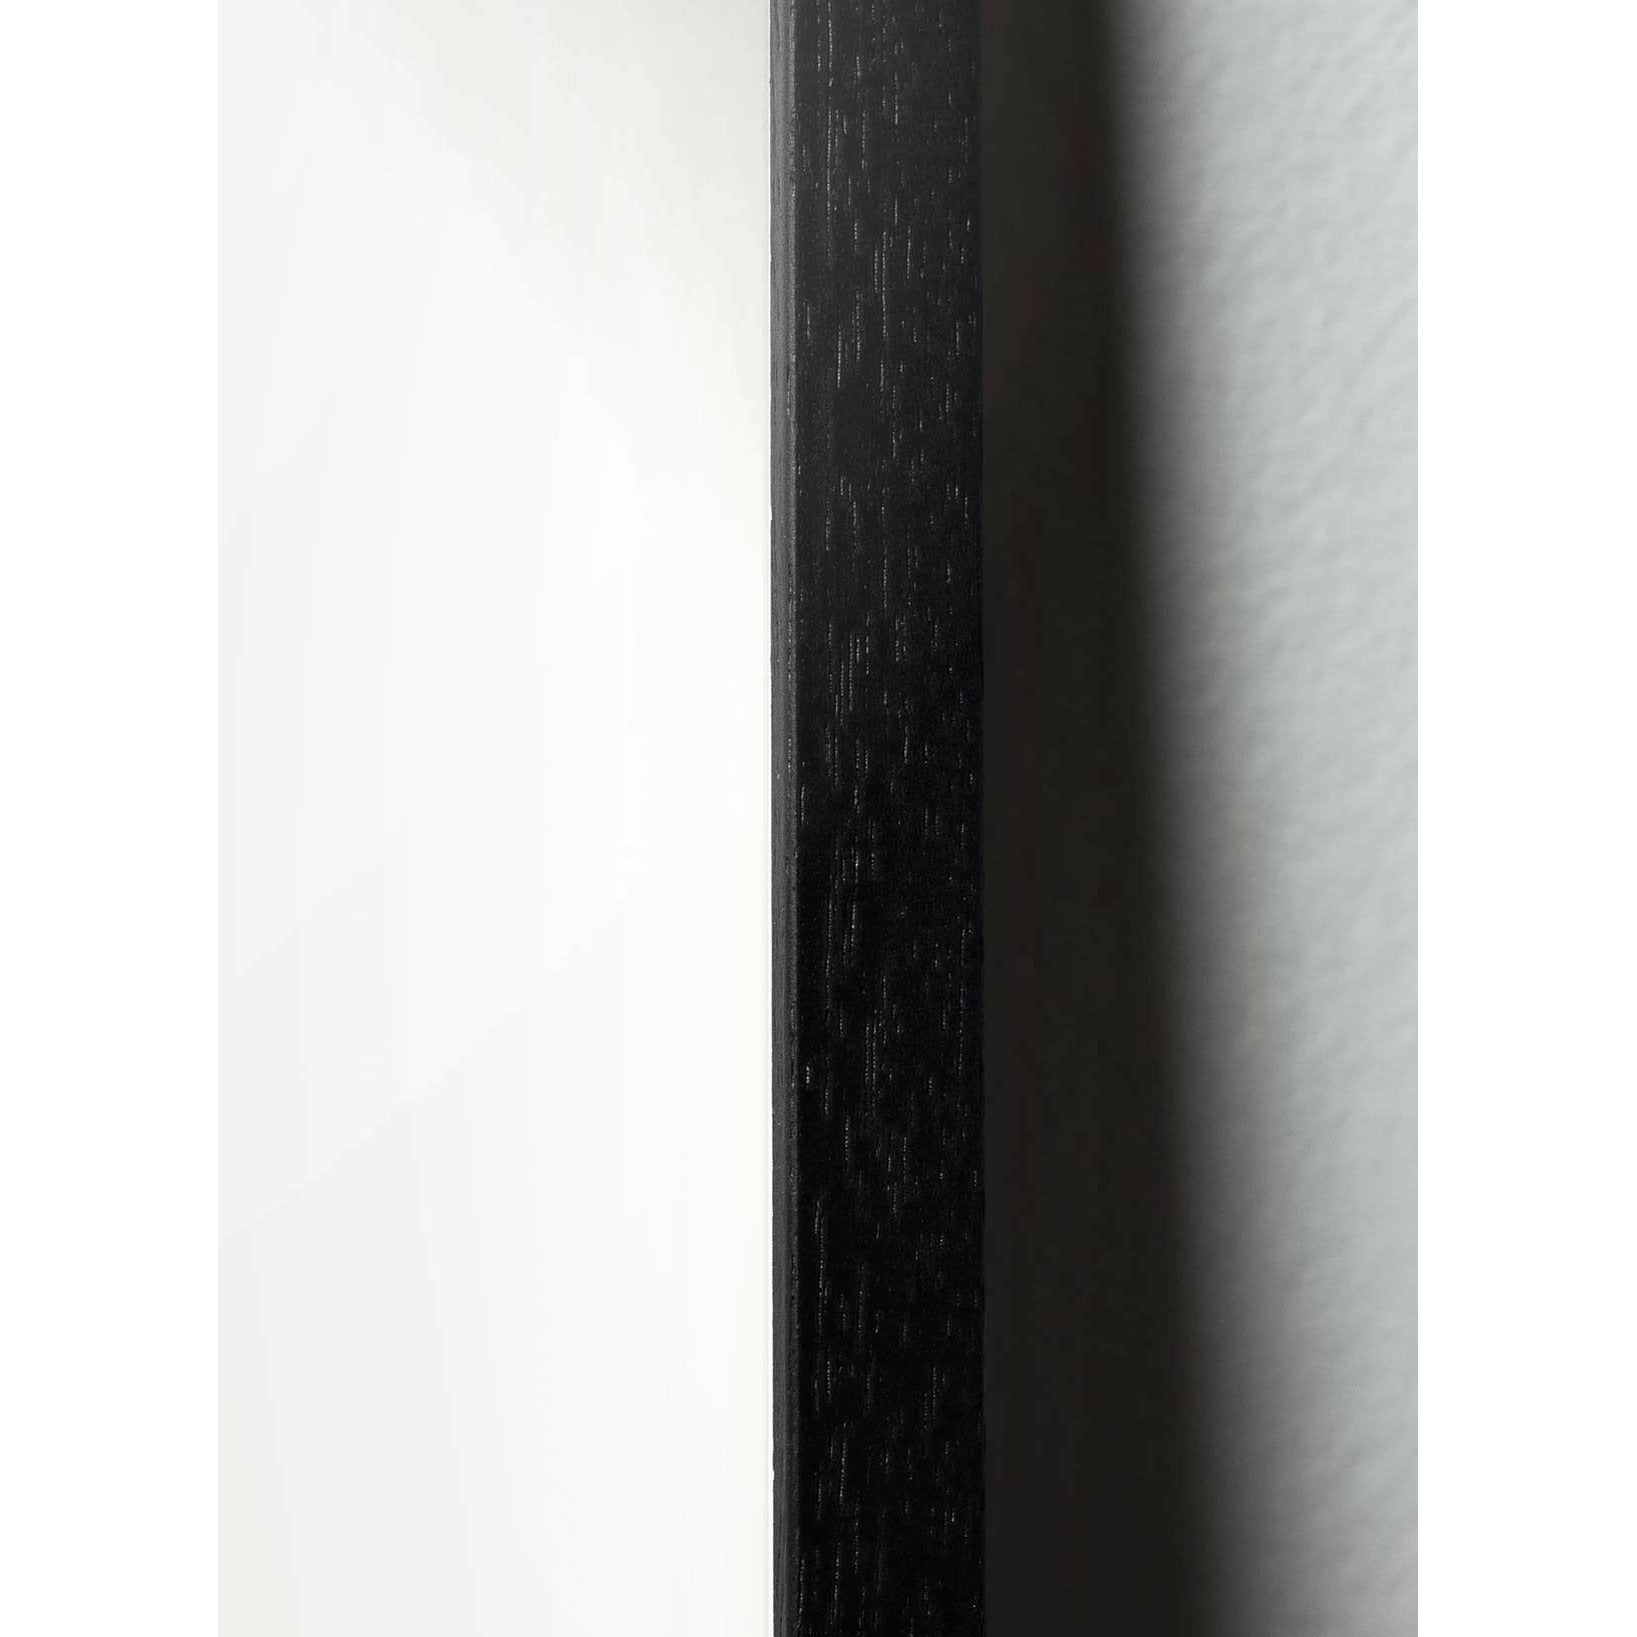 Brainchild Ant Line Poster, Rahmen aus schwarz lackiertem Holz 70x100 cm, weißer Hintergrund